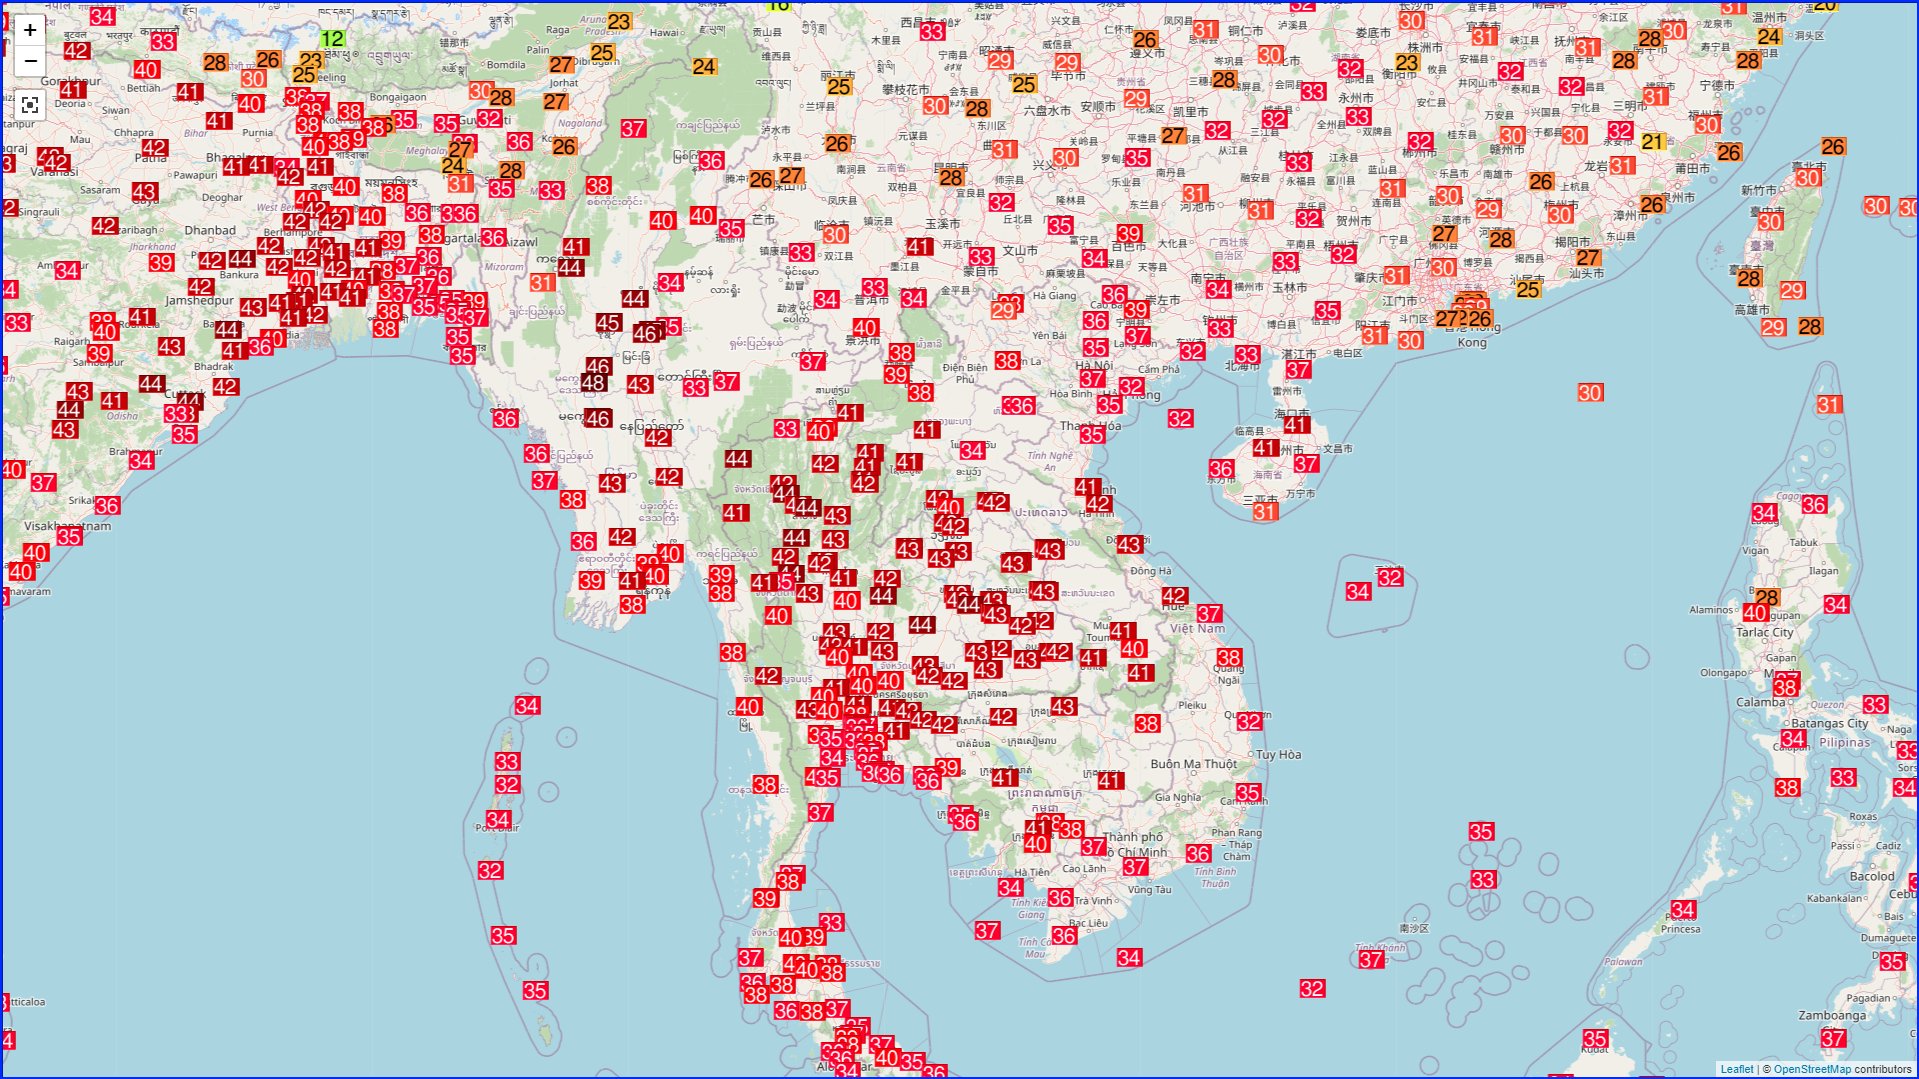 <p>Une chaleur exceptionnelle concerne depuis plusieurs semaines l'Asie.</p>
<p>Elle culmine ces derniers jours avec des valeurs records. Des records absolus ont été battus ou égalés à Manille - Philippines (38.8°C), Vientiane - Laos (42.5°C), au Cambodge (42.8°C), en Birmanie (plus de 46°C) ou au Vietnam (44°C).</p>
<p>Des dizaines de records mensuels battus en #Thaïlande avec des nuits étouffantes (records absolus de hautes minimales). D'autres ont également été battus en Inde ou en Chine (plus de 43°C), jusqu'au Japon.</p>
<p>Carte des maxi de ce 28 avril - Ogimet</p>